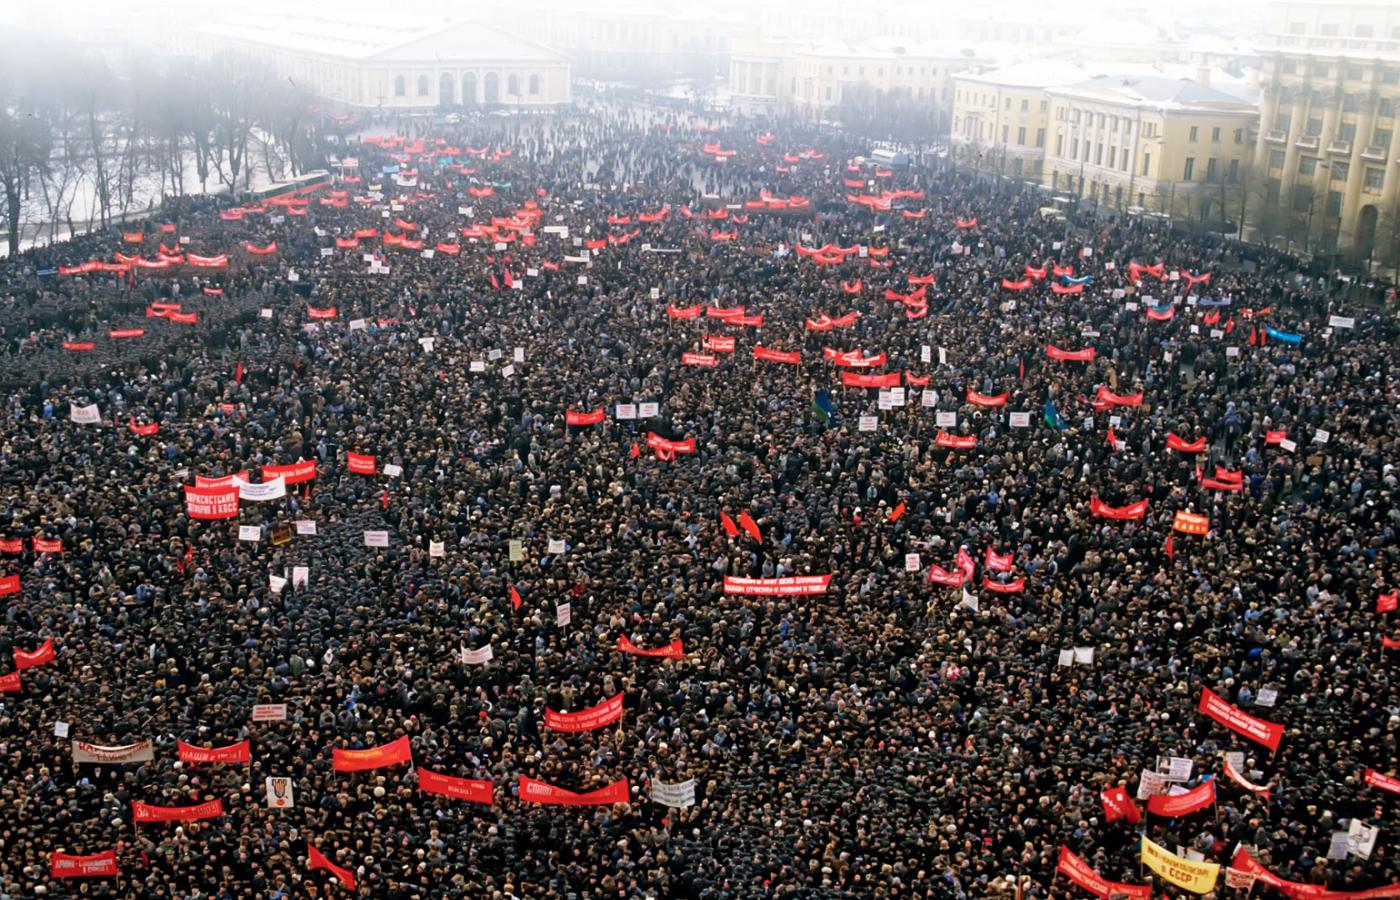 Wielotysięczna demonstracja przeciwników pierestrojki i reform demokratycznych, Moskwa, 23 lutego 1991 r.